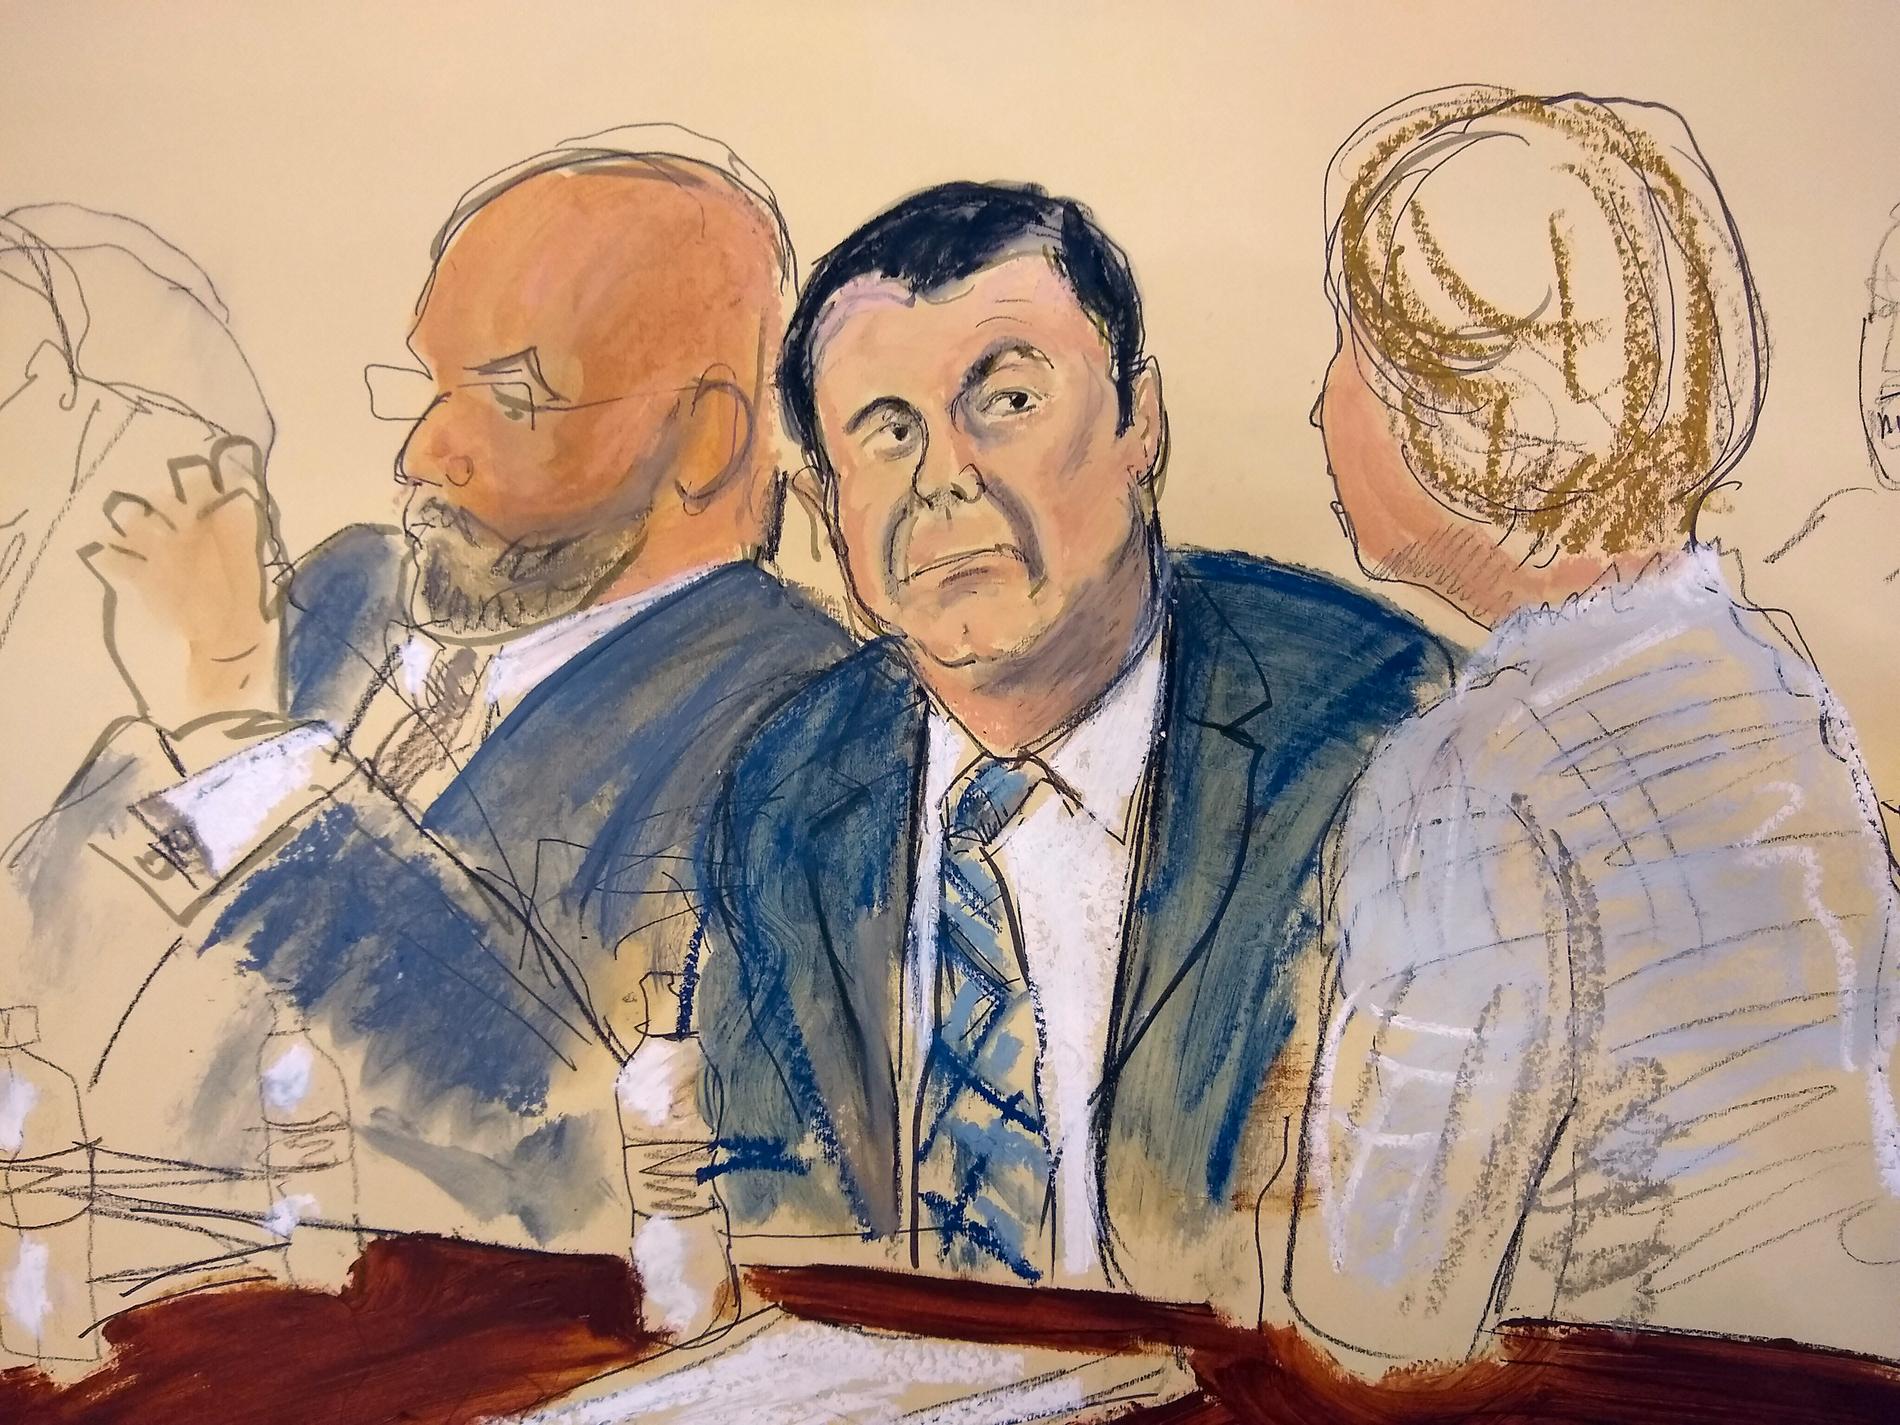 Joaquin "El Chapo" Guzman avlyssnades av FBI och samtalen spelas nu upp i rättegången mot honom. Illustration från rättegångssalen i november.